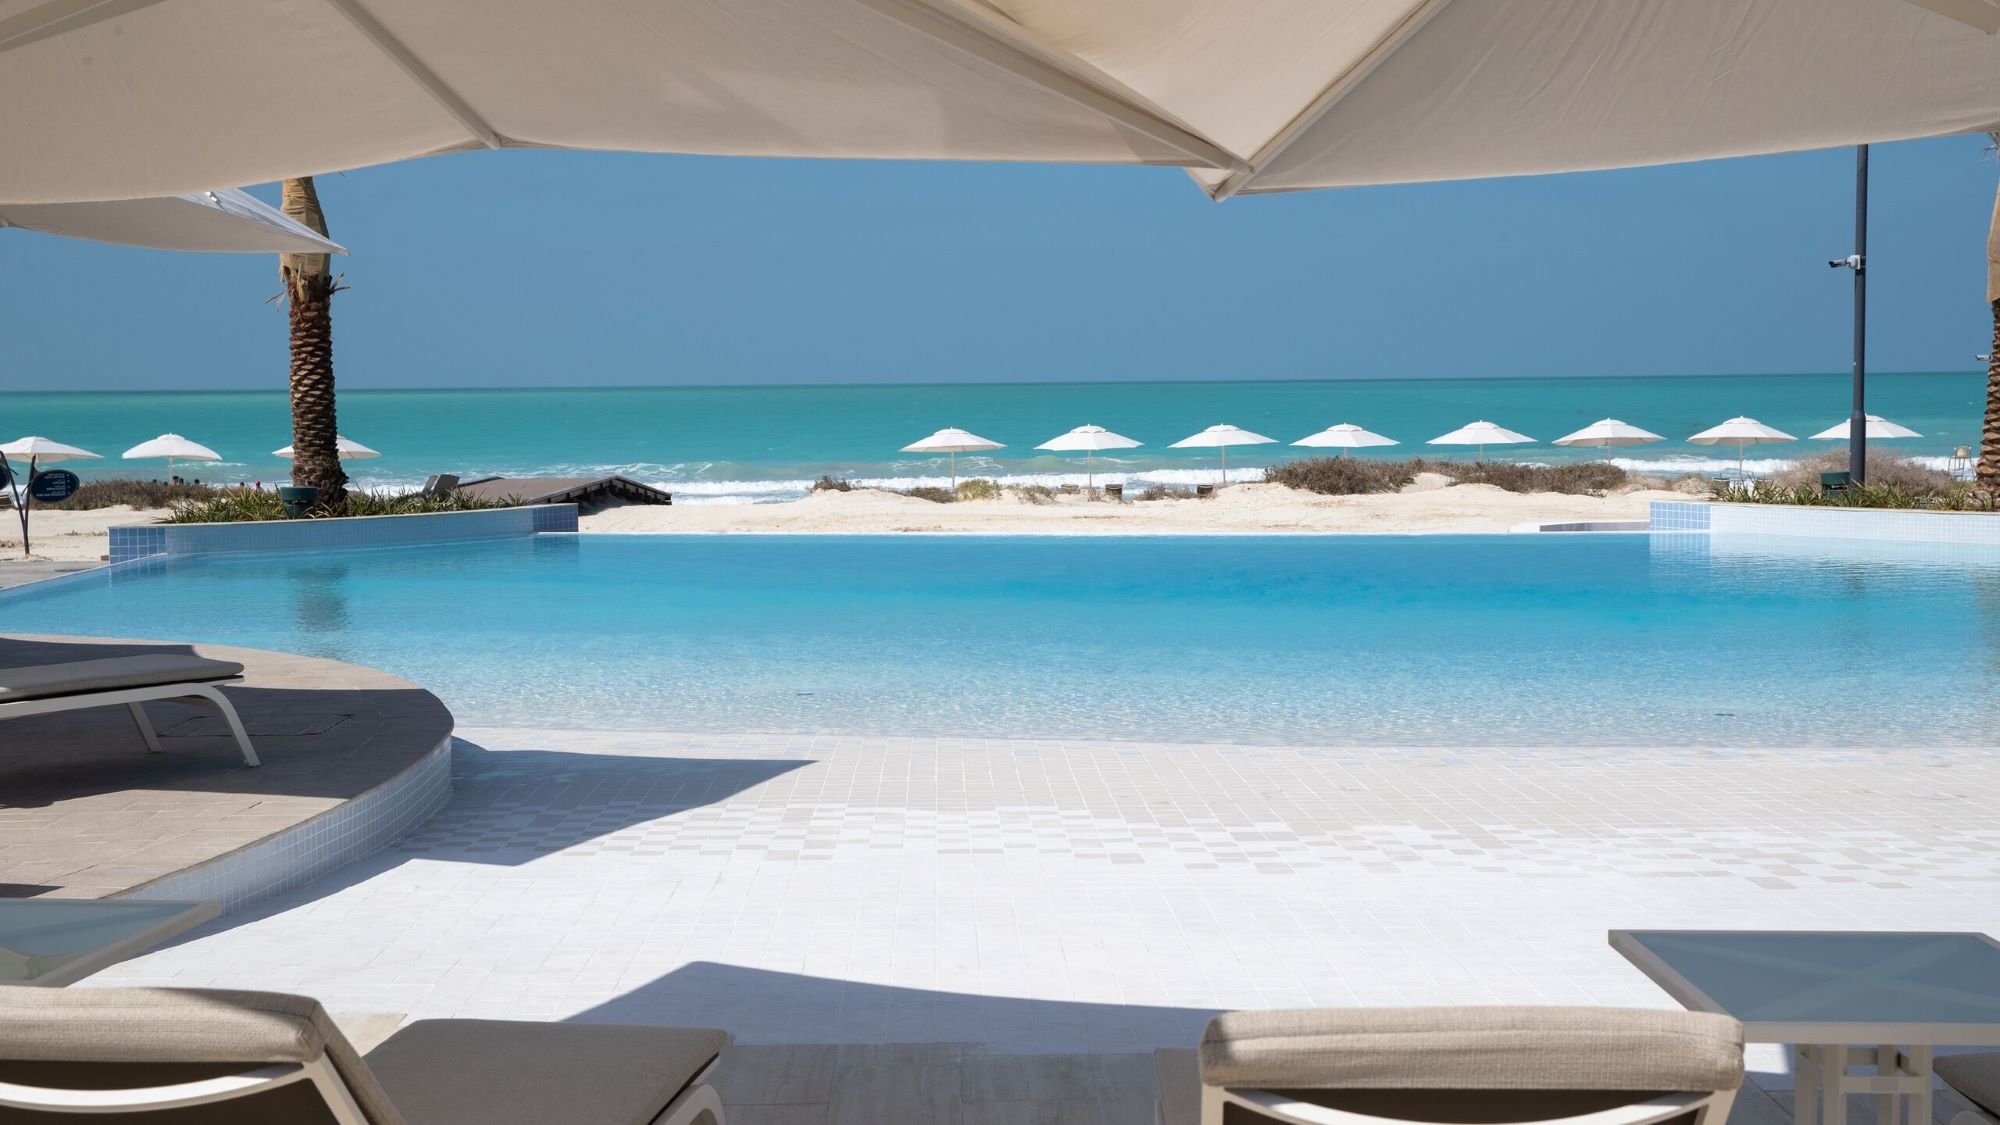 REVIEW: Jumeirah at Saadiyat Island Resort Abu Dhabi - Turning